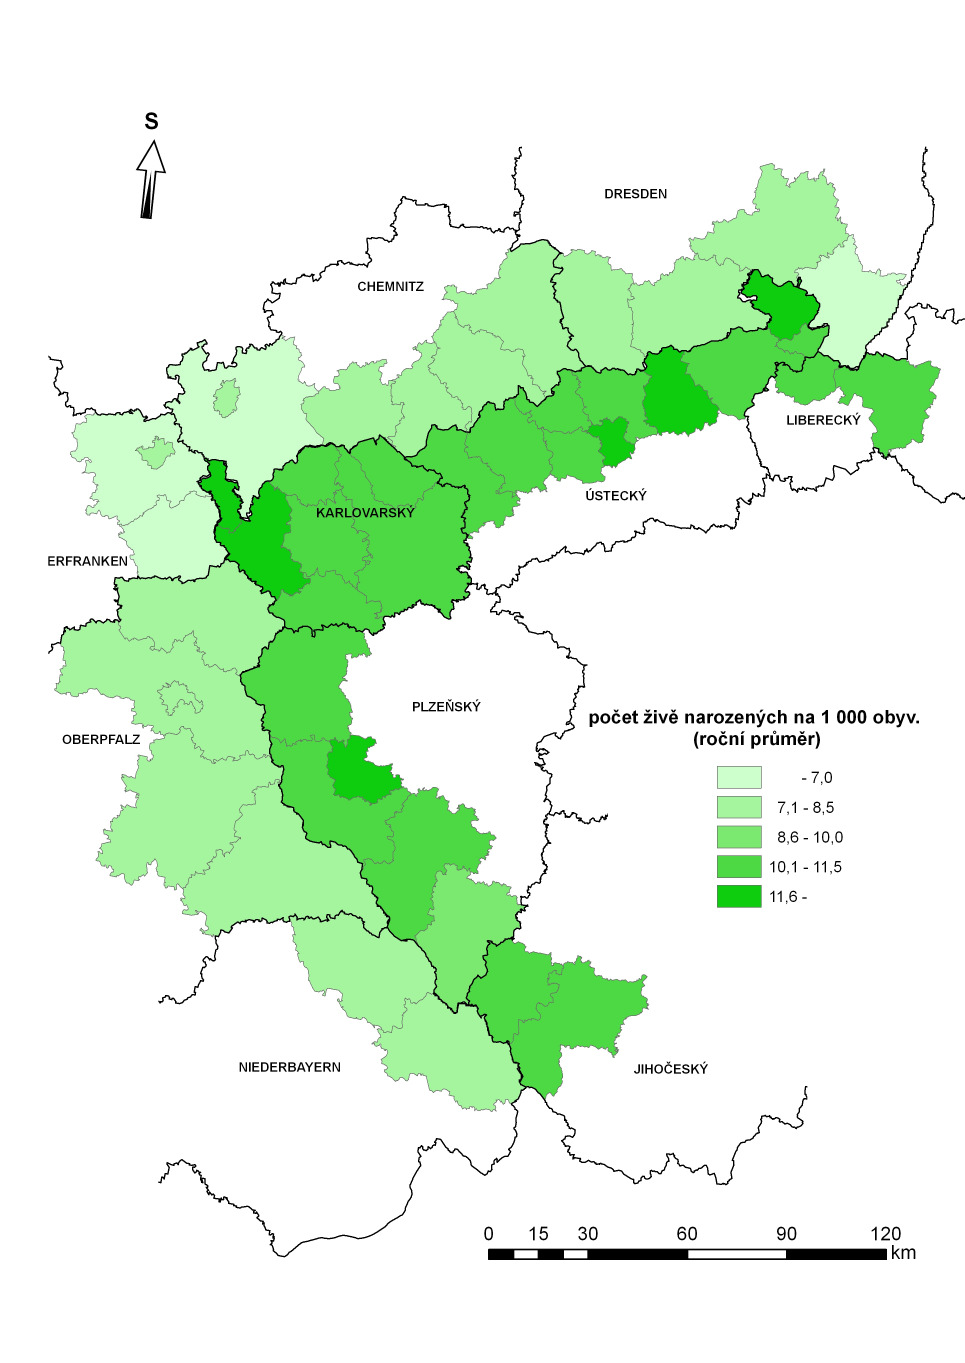 nárůstem/úbytkem) na Sokolovsku a Mostecku (o 2%), ještě výrazněji pak v obvodech Mariánské Lázně a Bílina (o 3 %, resp. 4 %).